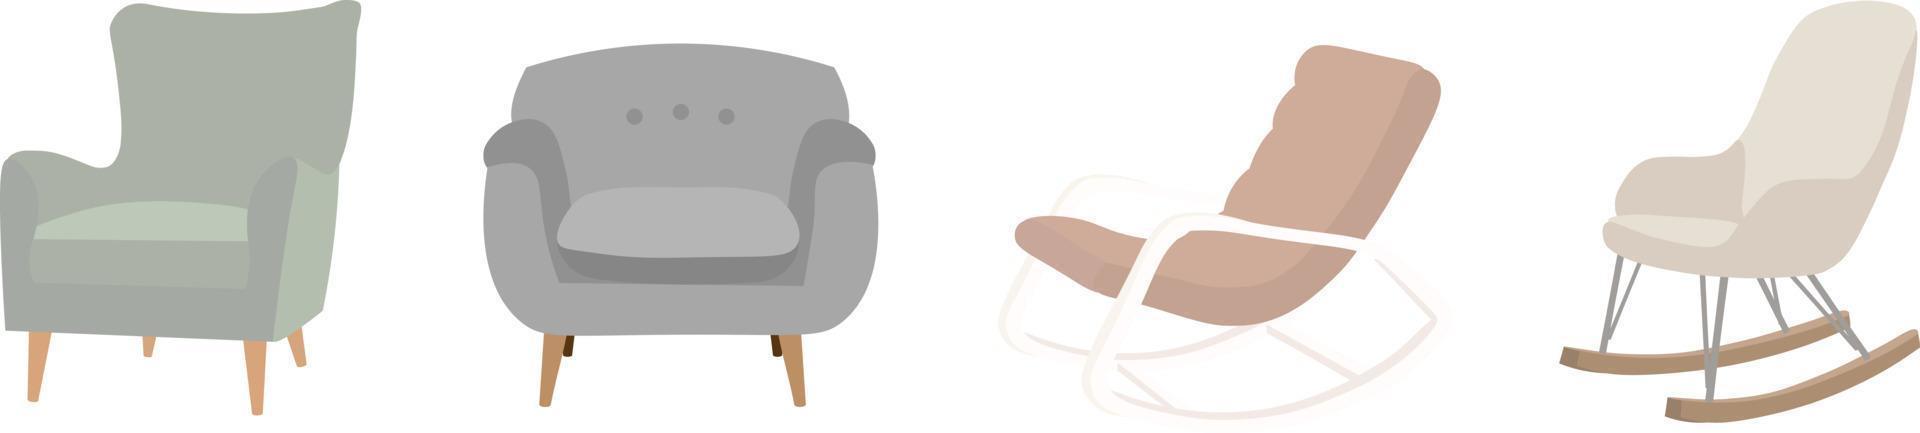 cuna para el recién nacido vector ilustración plana muebles para niños sobre fondo blanco